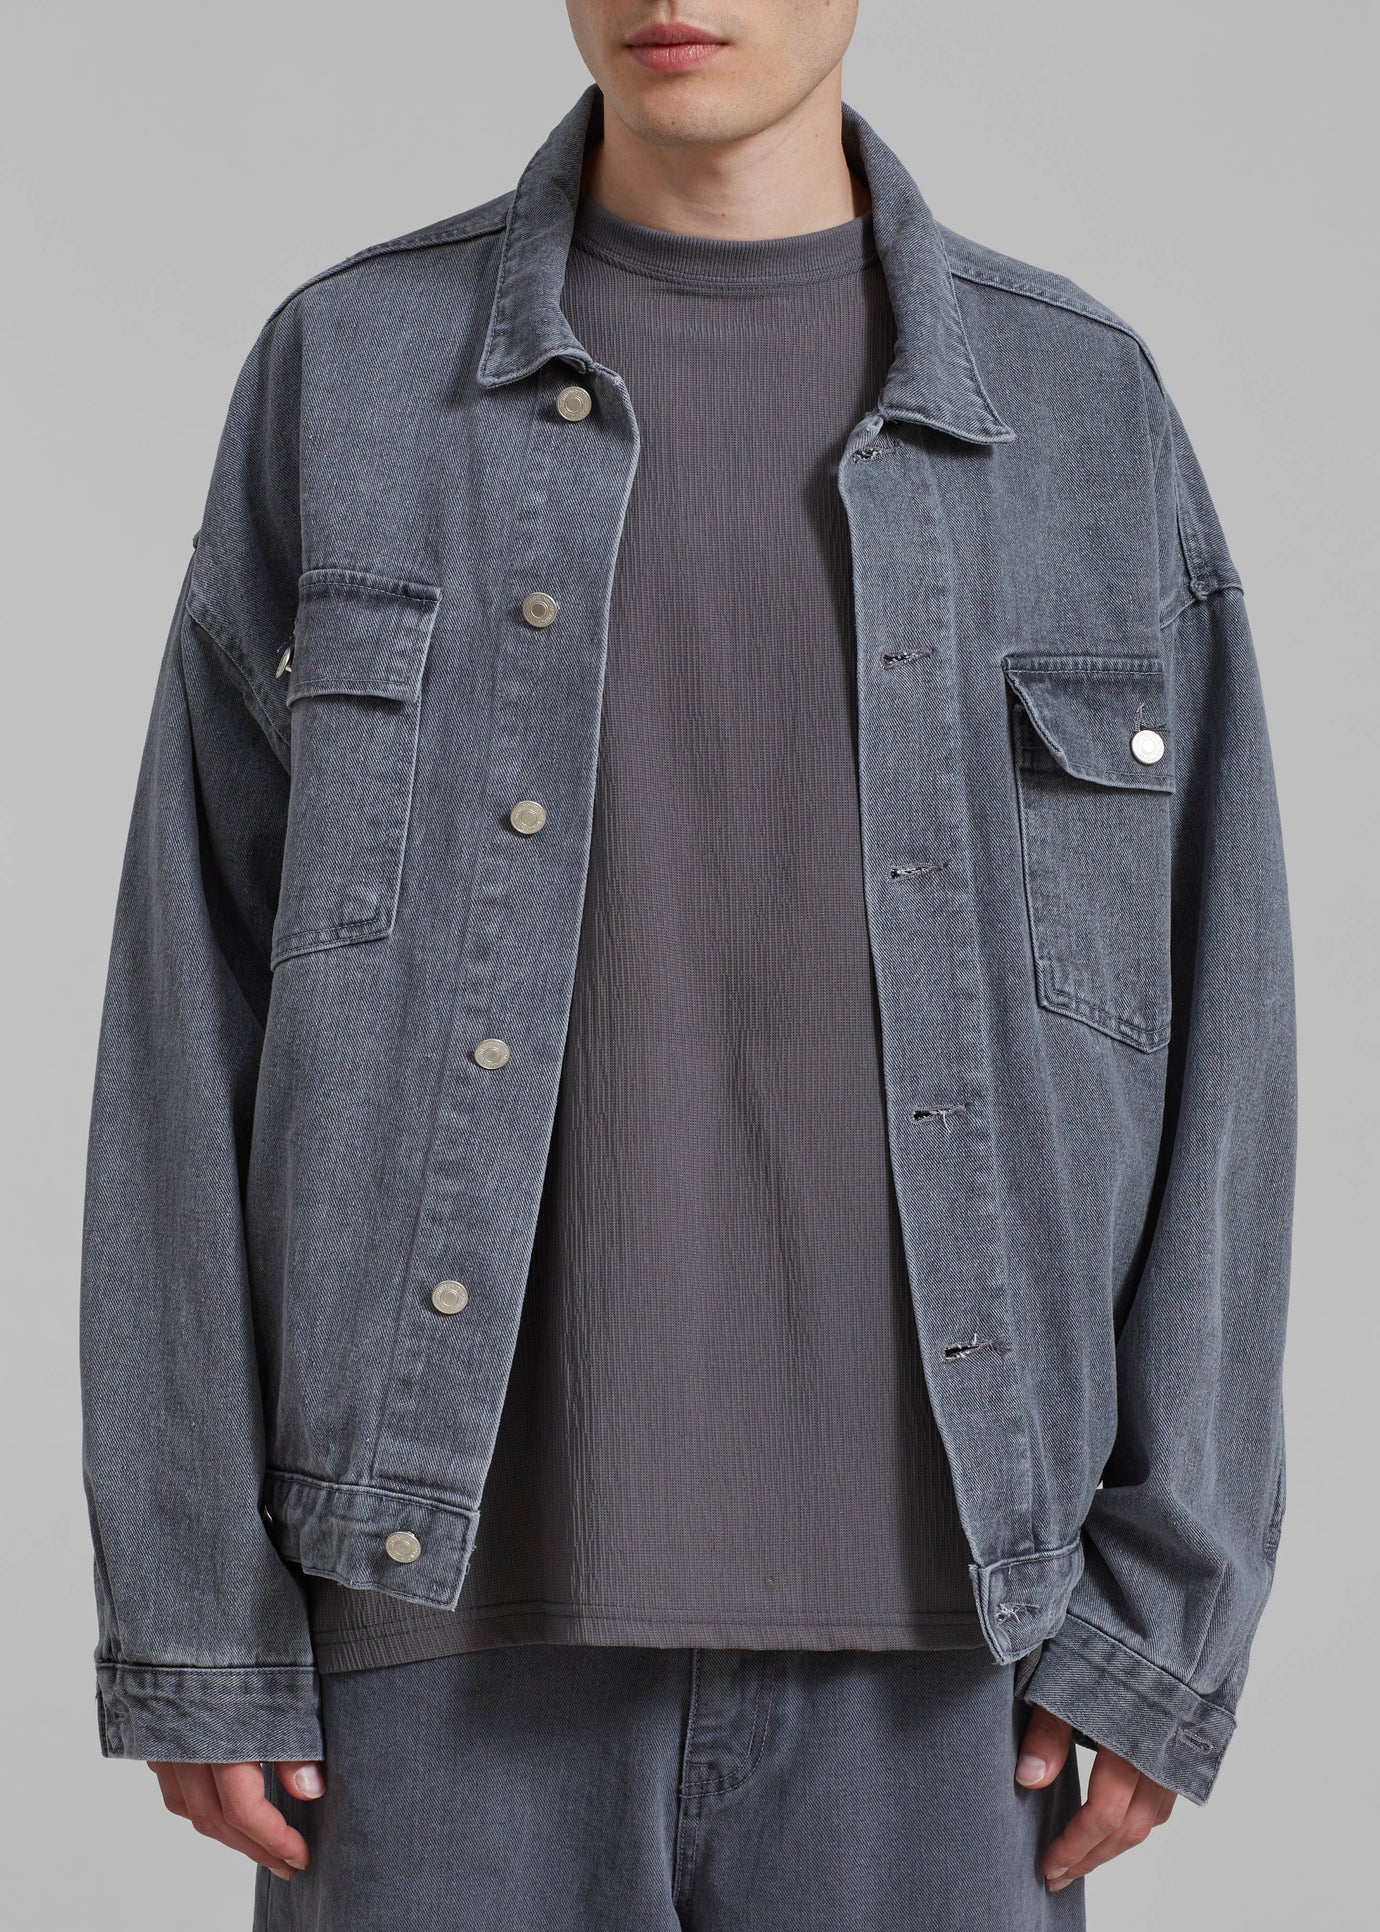 Connor Oversized Denim Jacket - Grey Wash - 1